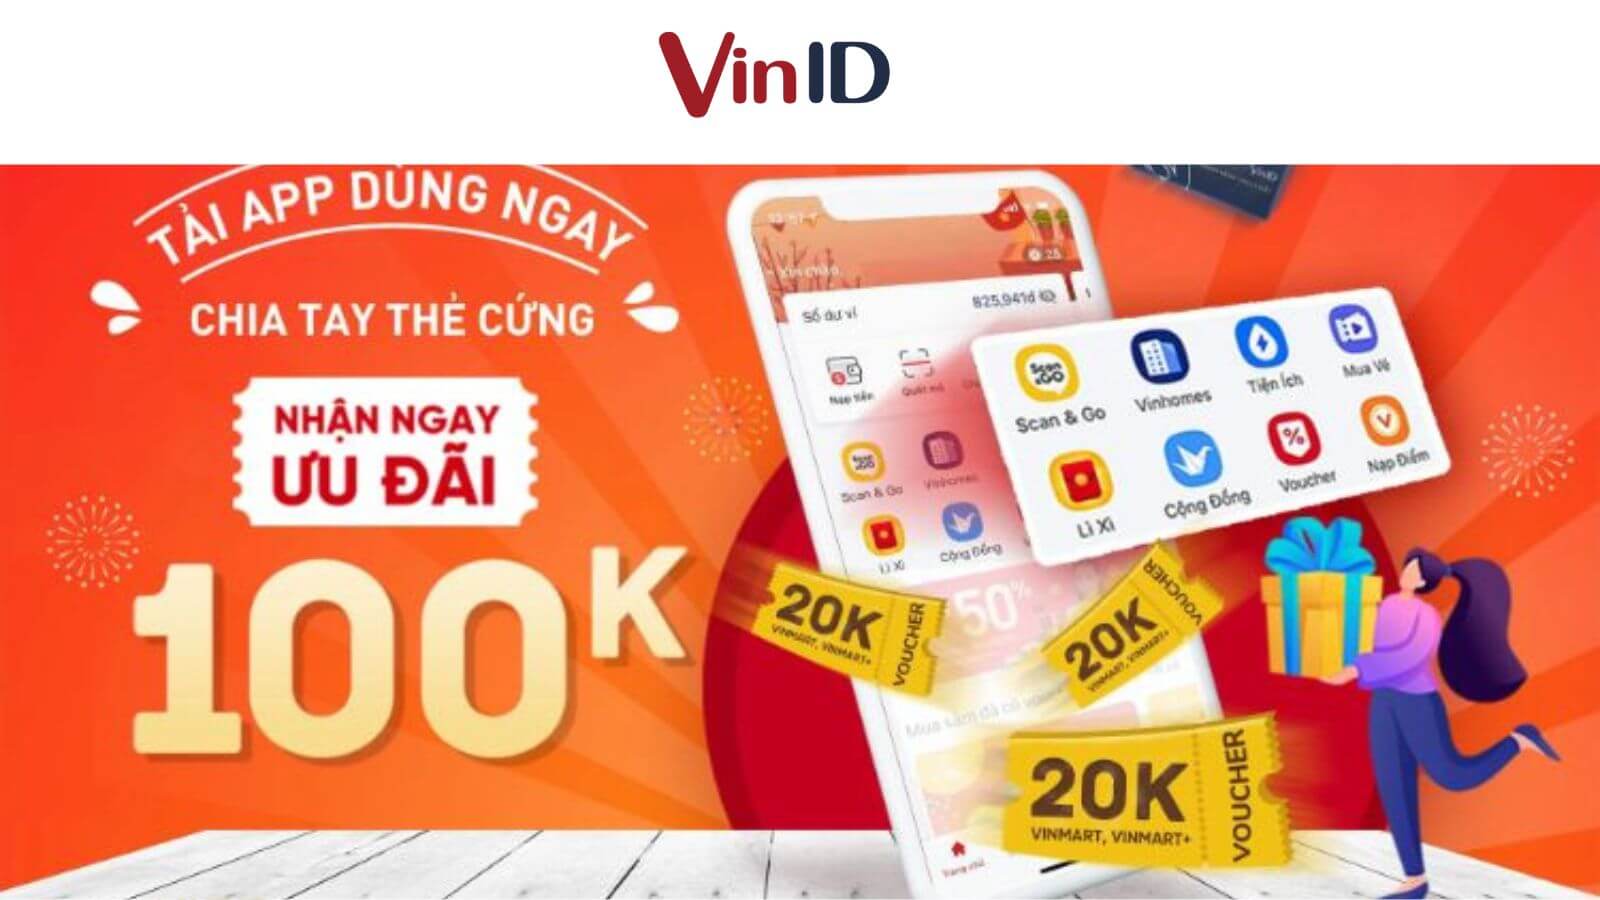 Cách tải app VinID